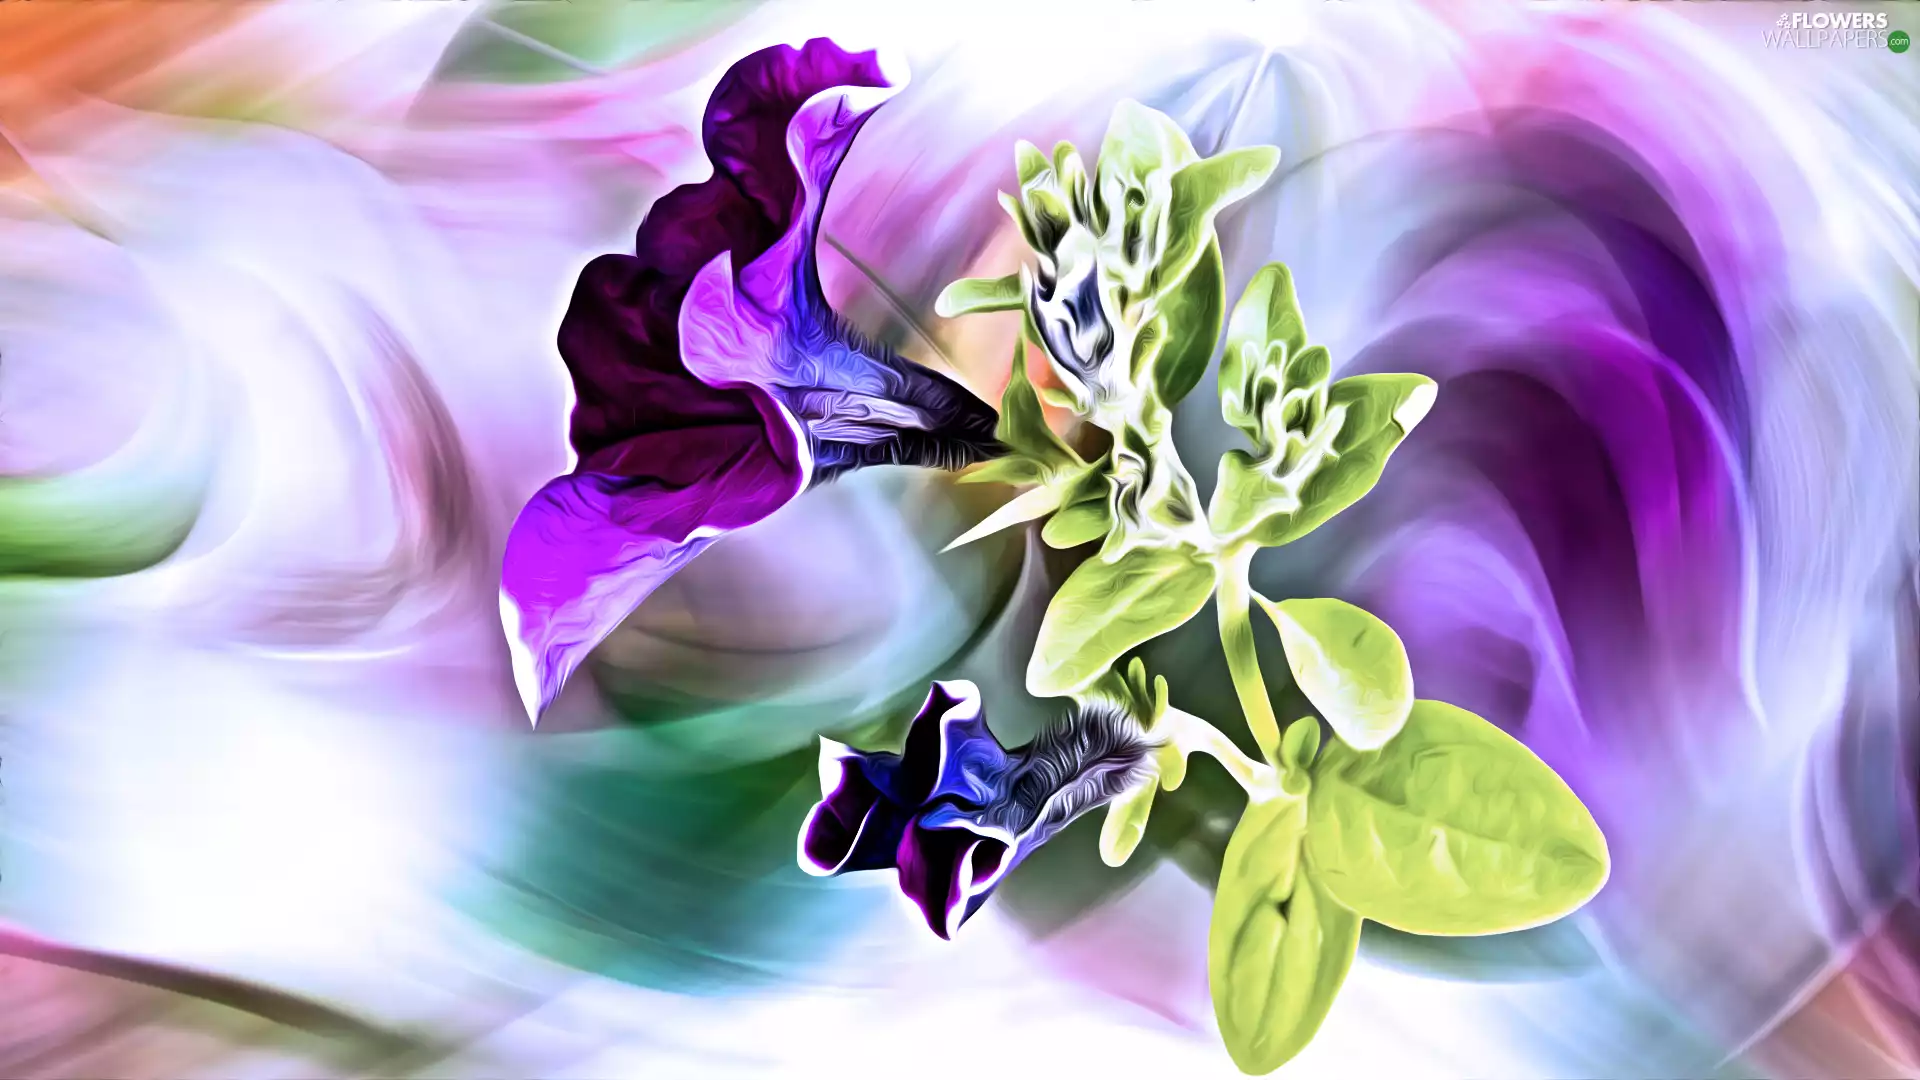 Flowers, petunias, graphics, purple